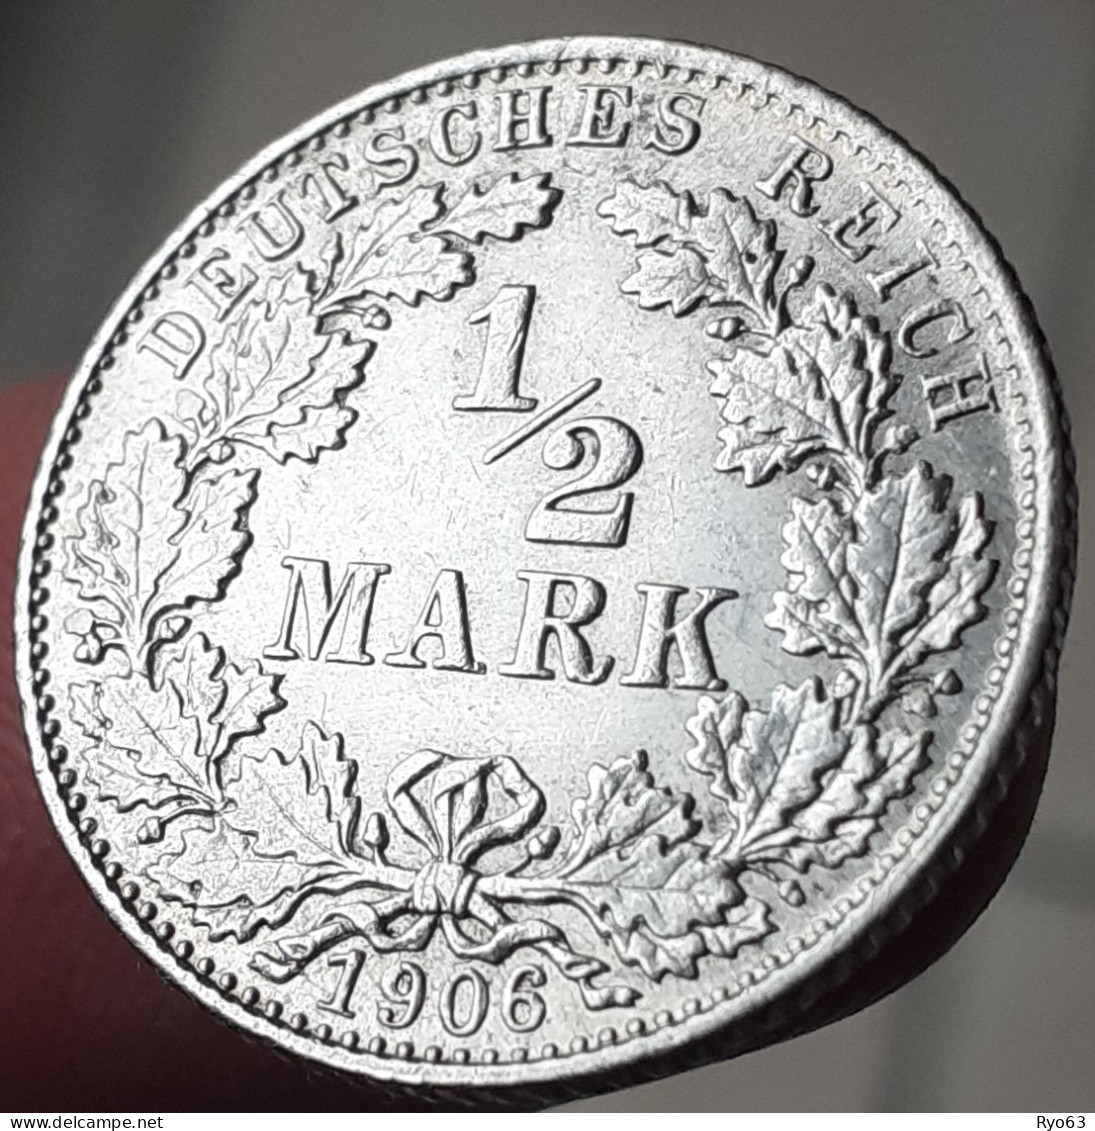 Monnaie 1/2 Mark 1906 D Wilhelm II Allemagne - 1/2 Mark